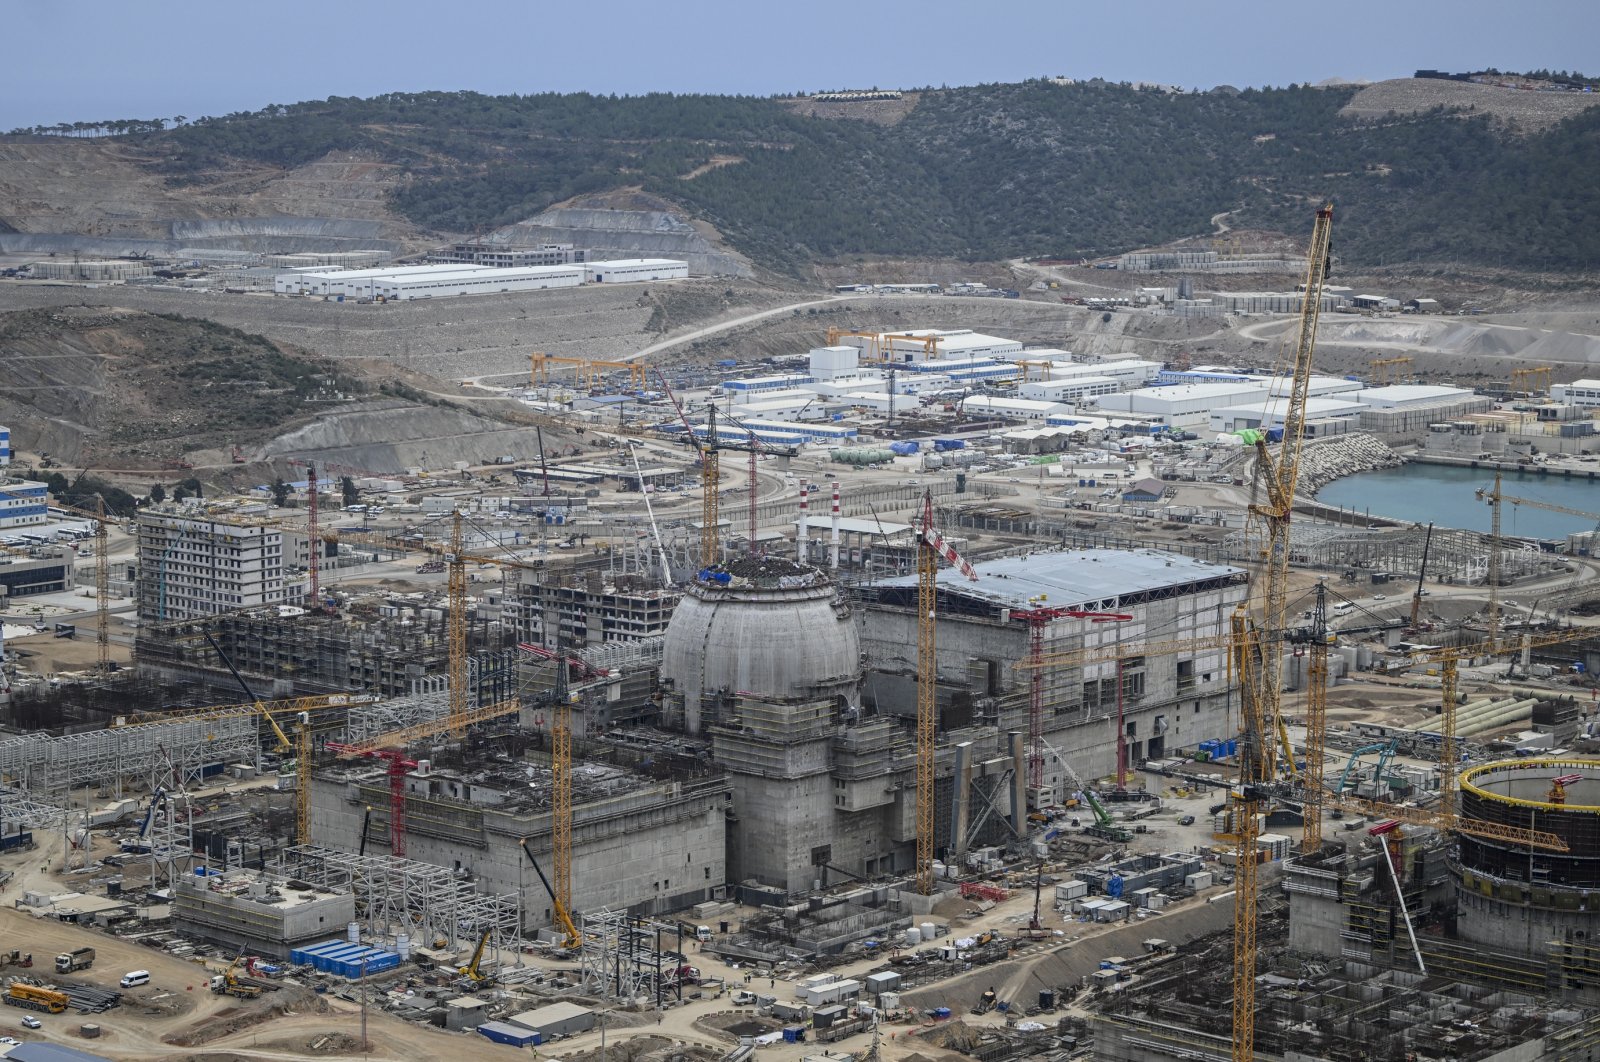 Türkiye untuk mendapatkan status nuklir sebagai pengiriman bahan bakar pertama untuk Akkuyu